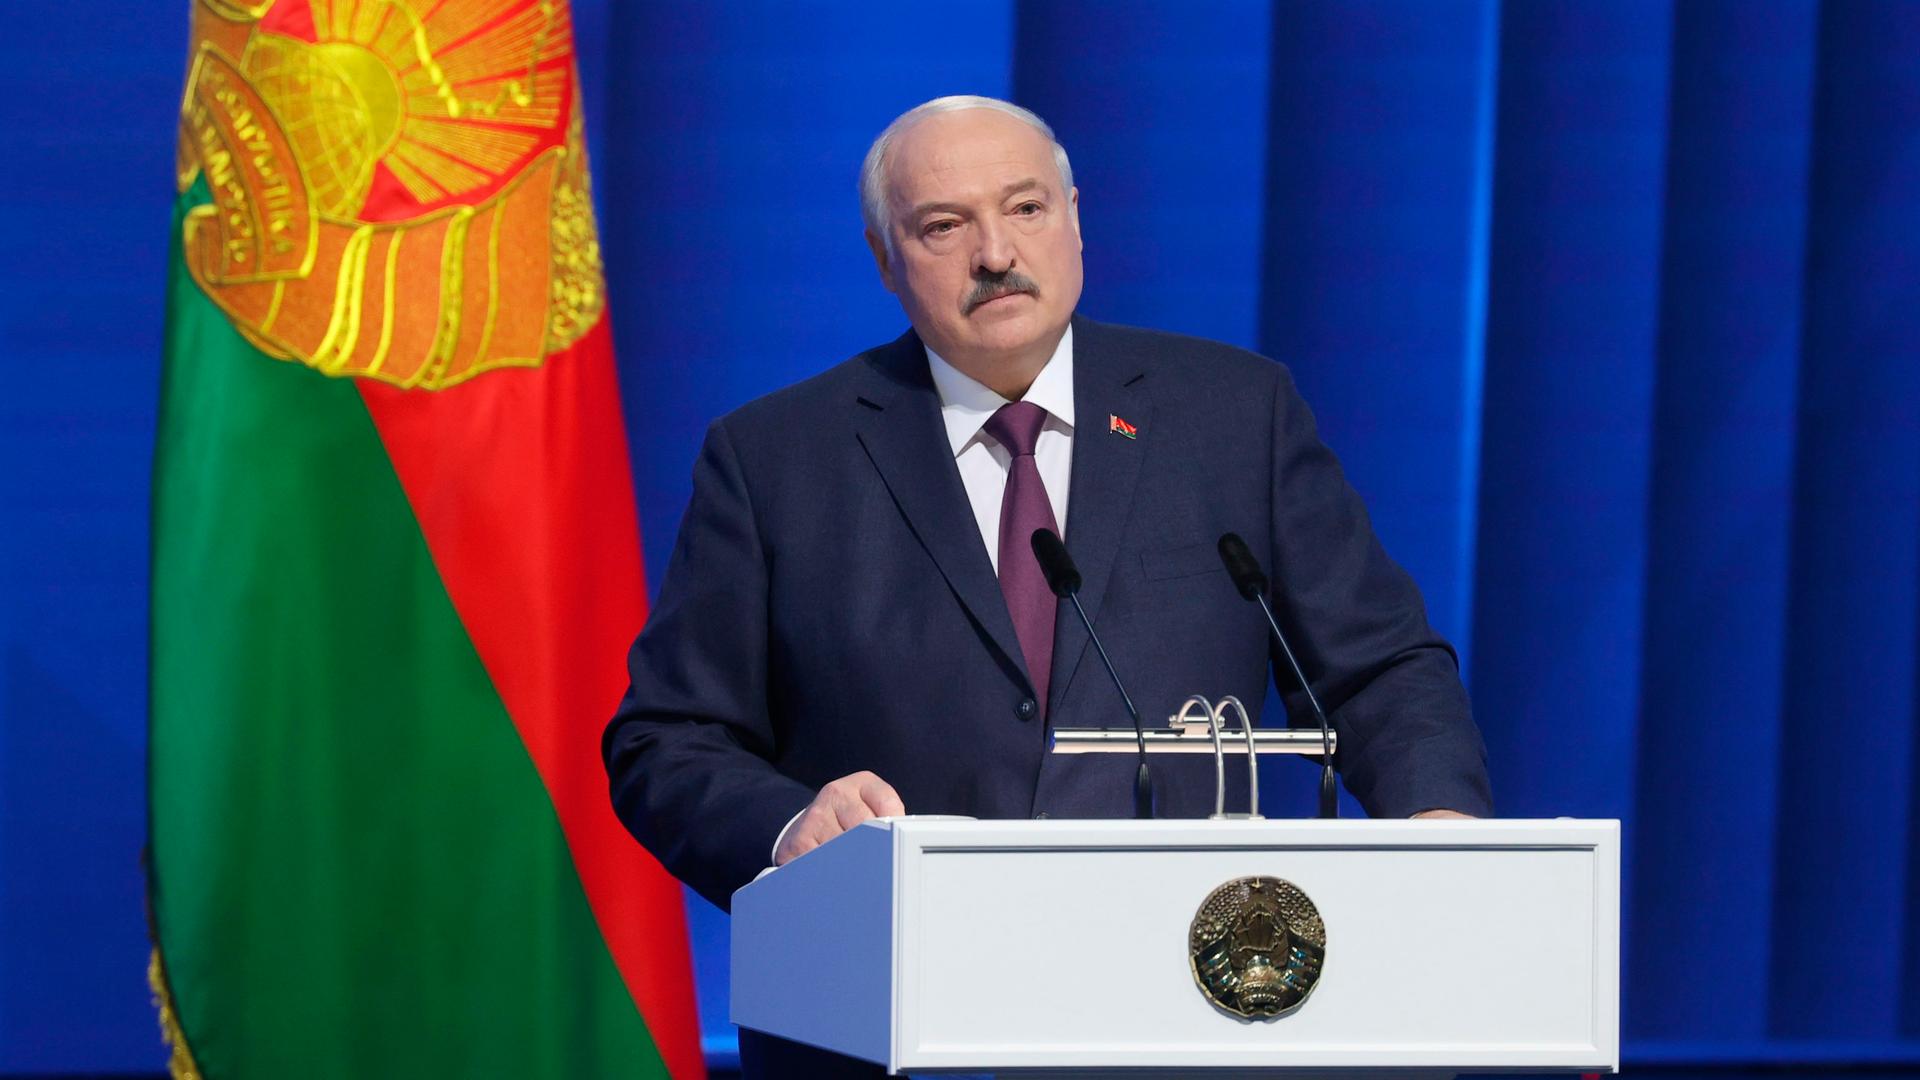 "Versuch der Einschüchterung" - Bundesregierung verurteilt Ankündigung von Lukaschenko zu Stationierung russischer Atomwaffen